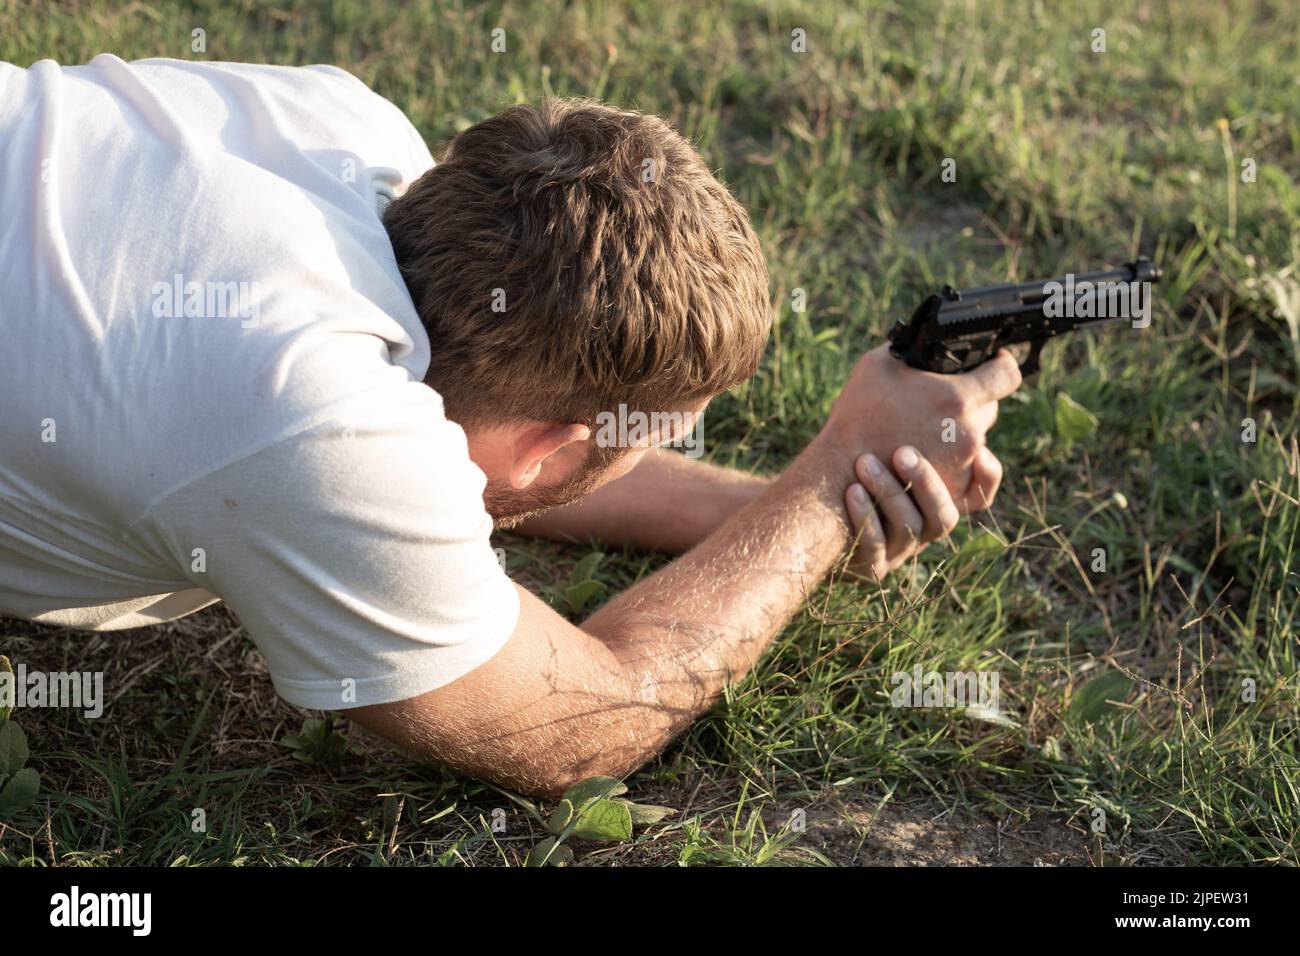 Un uomo giace sull'erba con una pistola in mano, preparandosi a sparare. Tempo libero e hobby. Foto Stock